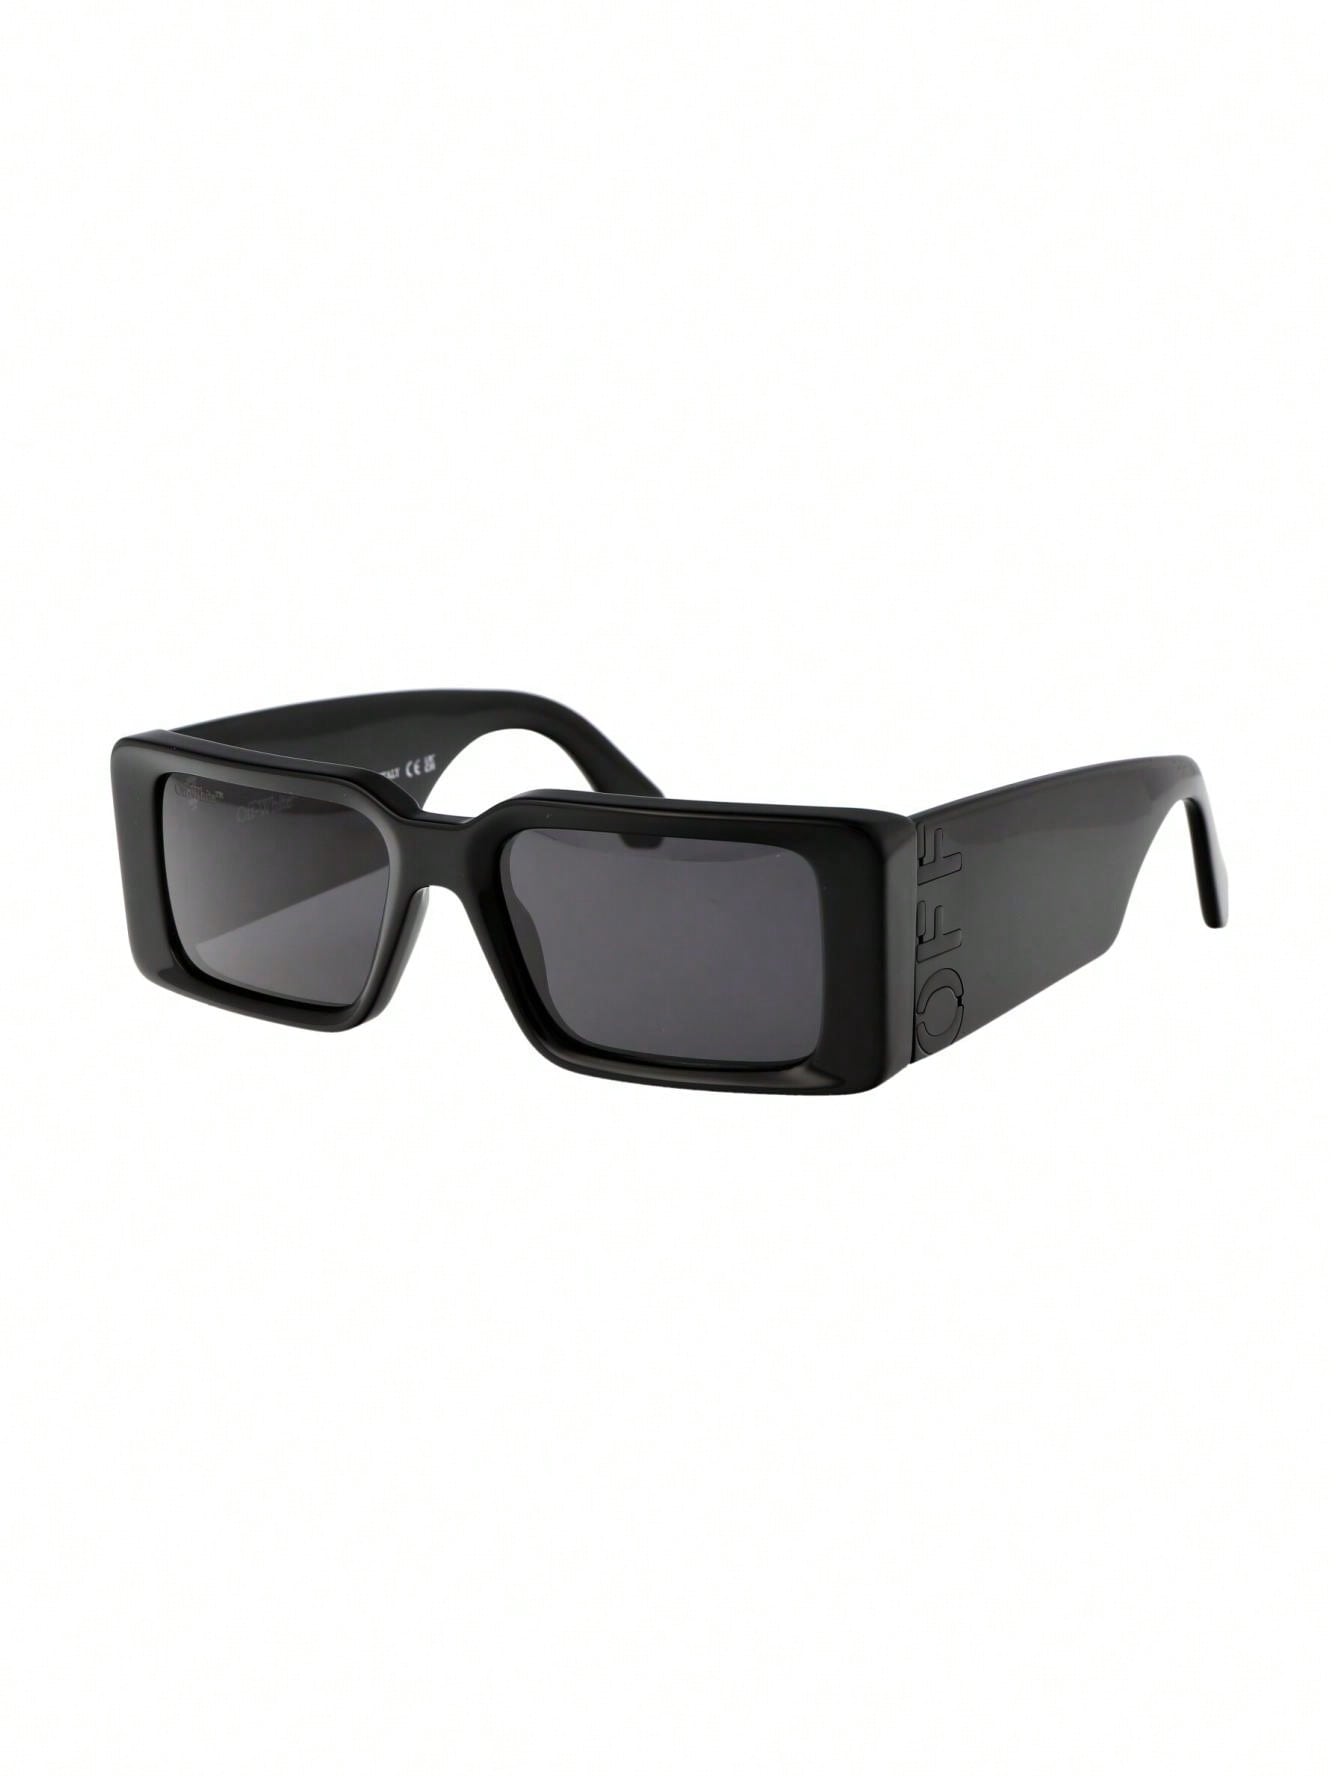 мужские солнцезащитные очки off white черные oeri094f23pla0011007 черный Мужские солнцезащитные очки Off-White СЕРЫЕ OERI097F23PLA0011007, серый